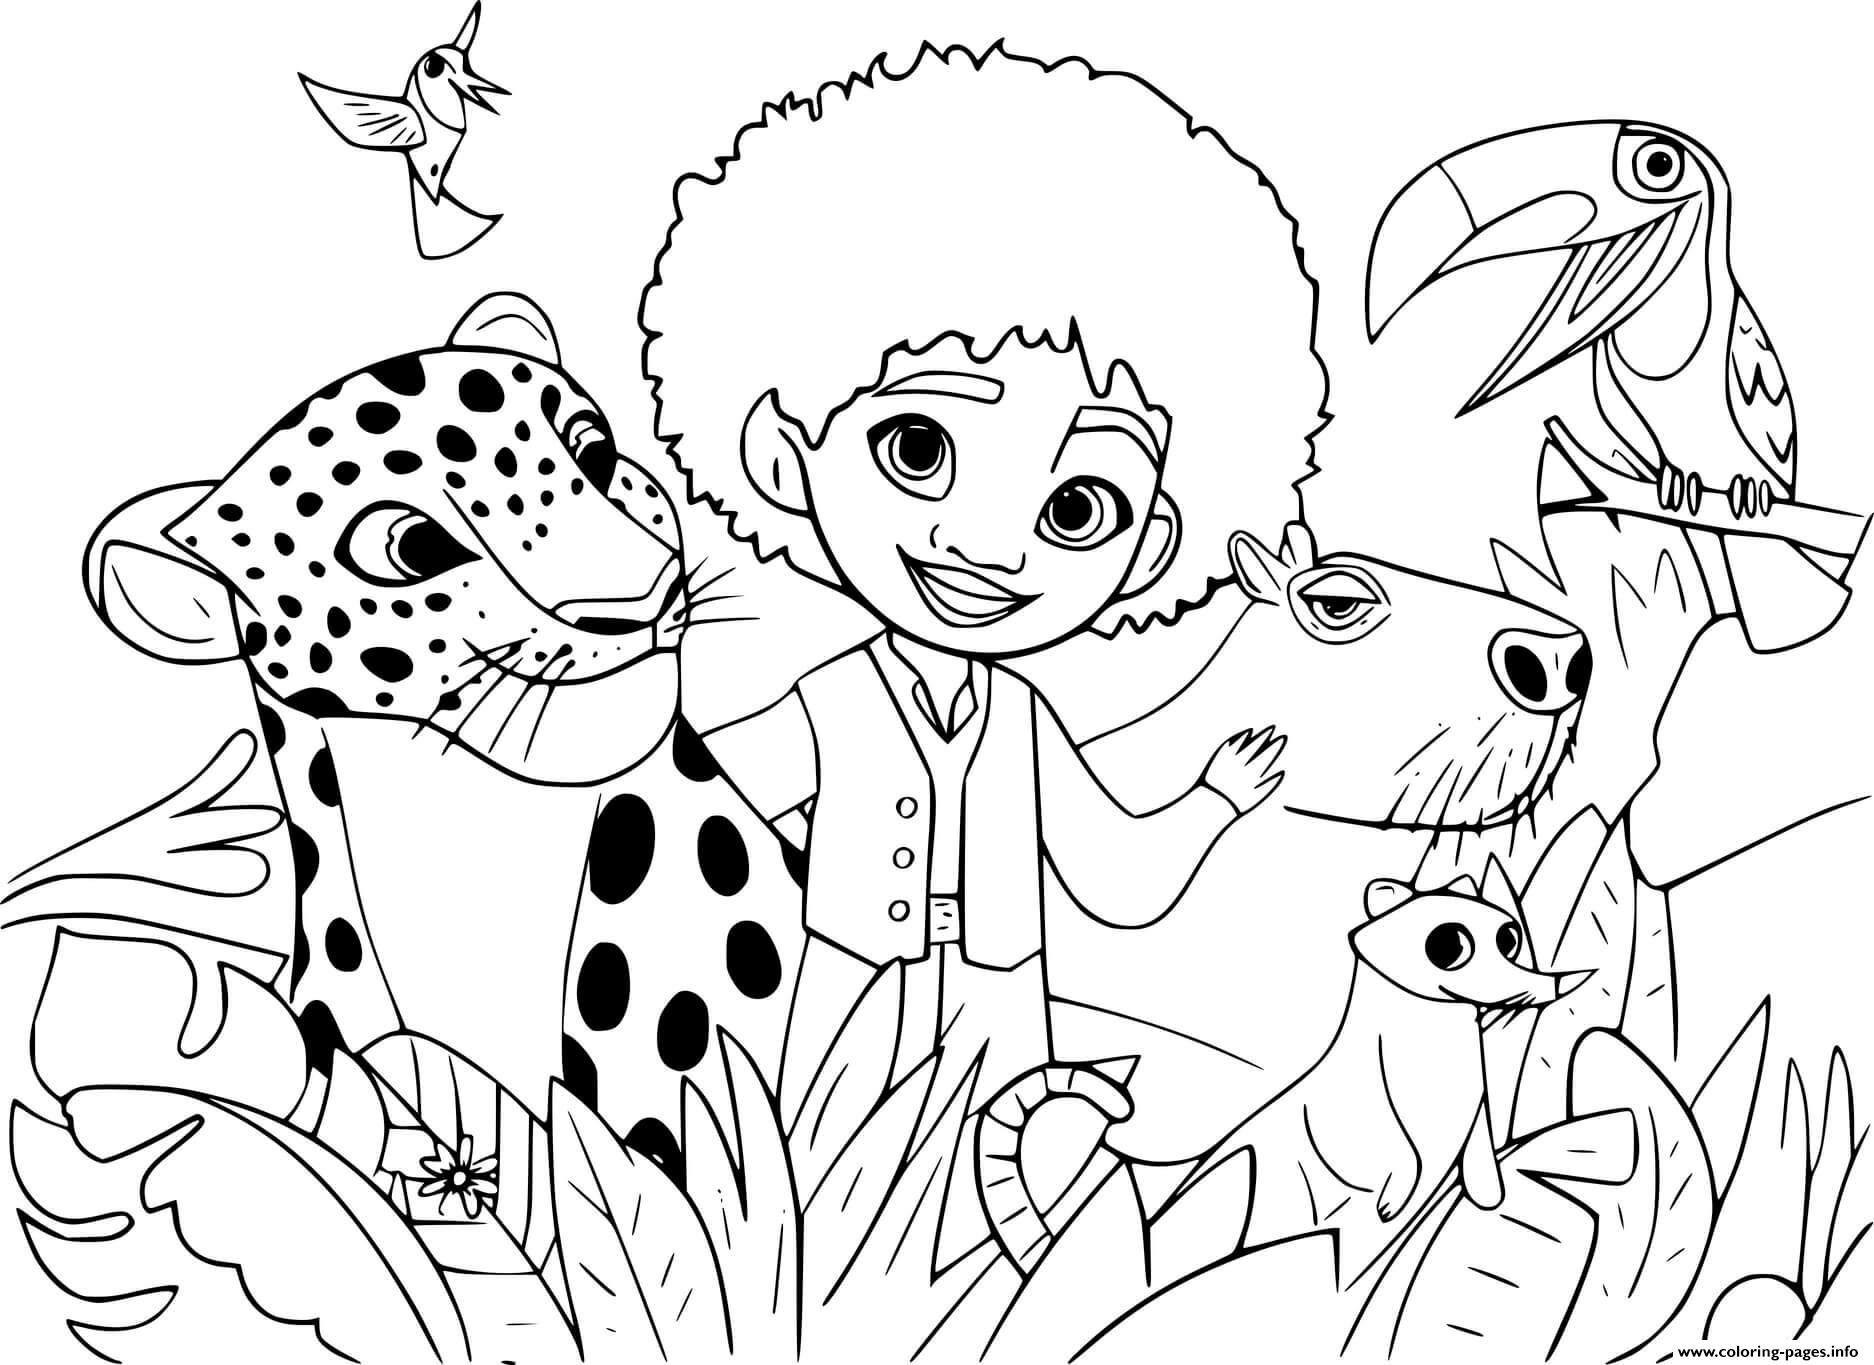 Encanto Antonio With Coati And Capybara Coloring page Printable